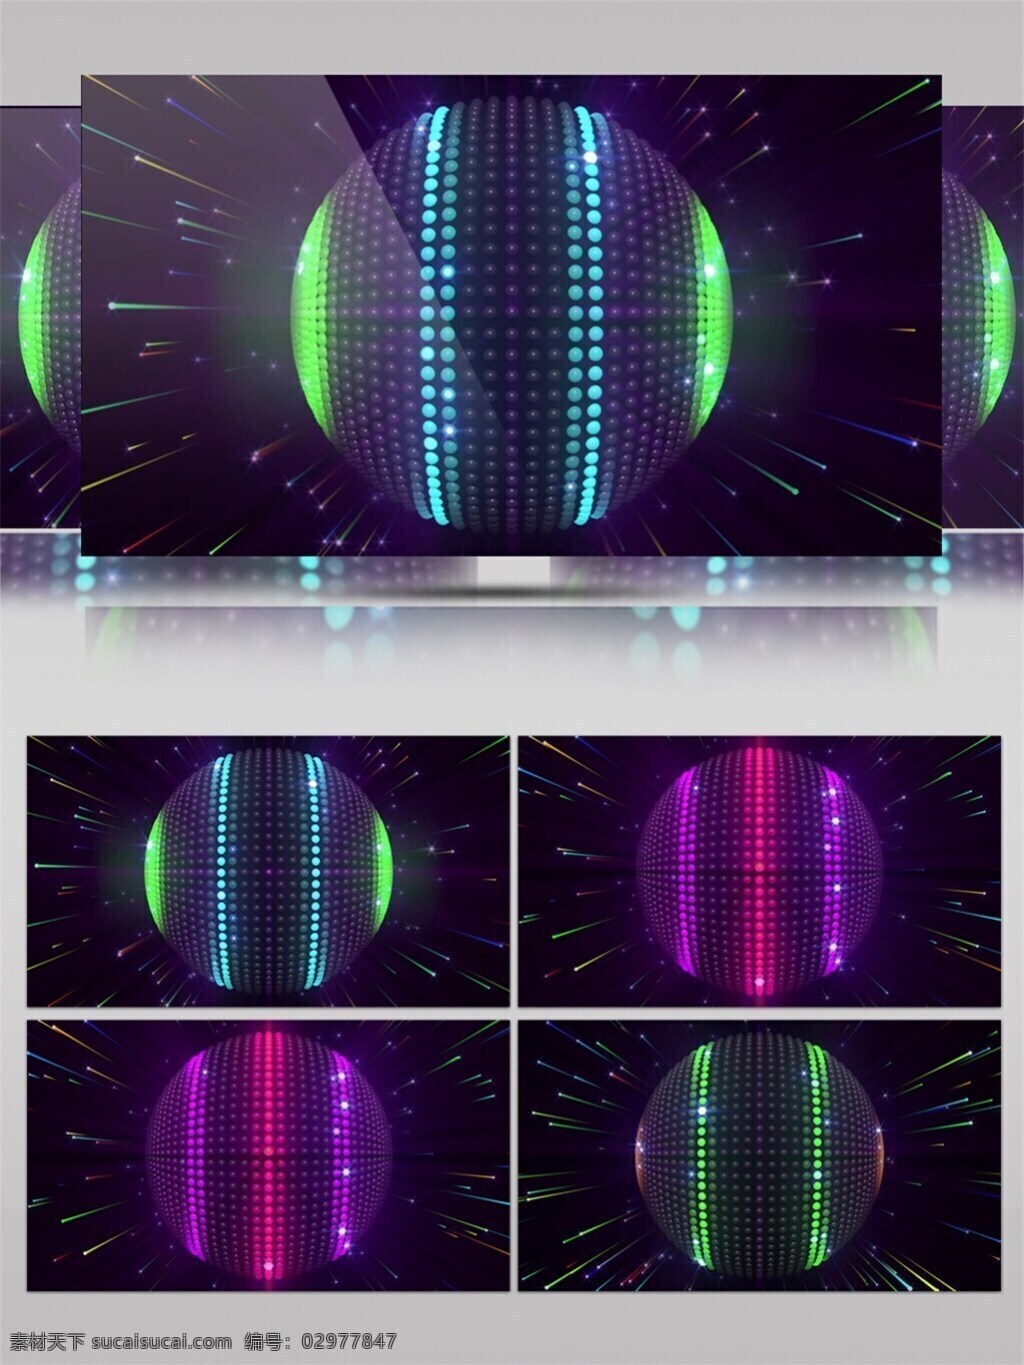 炫 酷 光球 高清 视频 3d视频素材 vj灯光 变换颜色 光球炫酷 华丽大气 特效视频素材